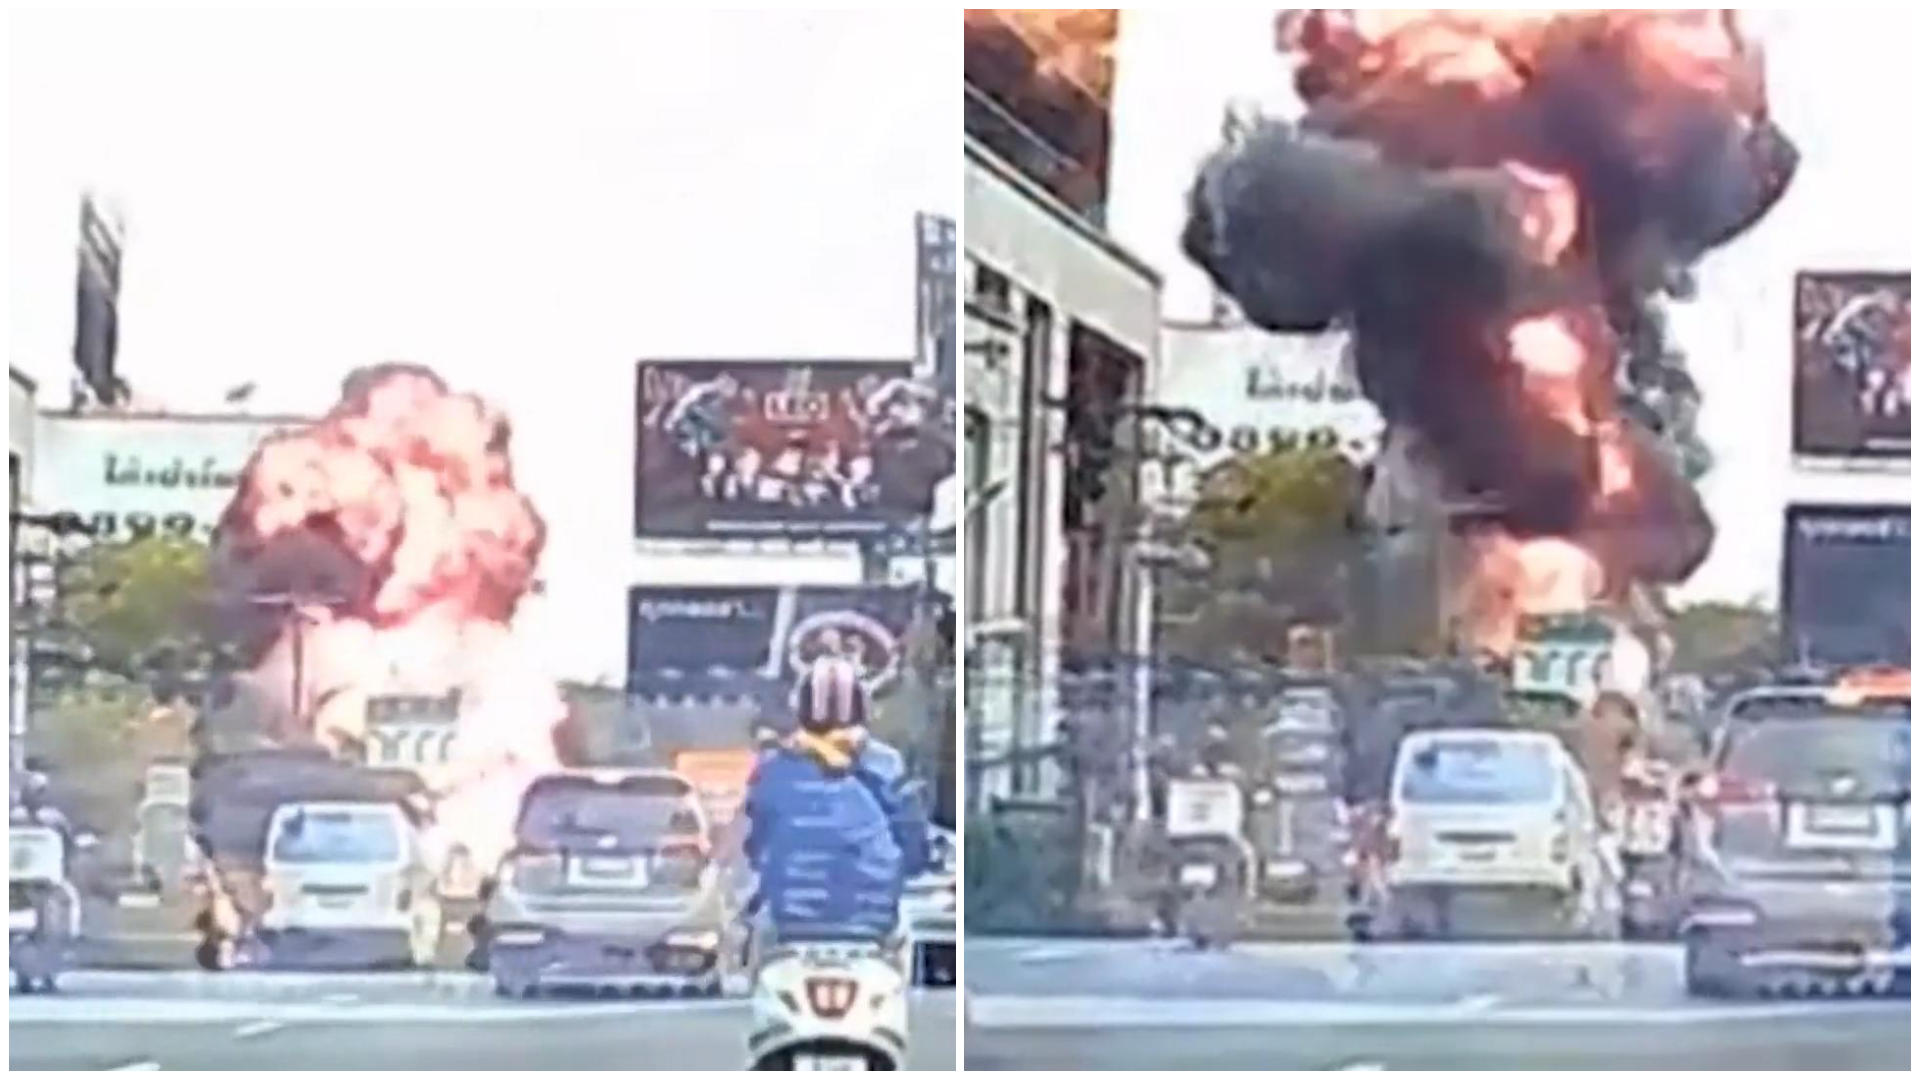 Riesiger Feuerball erschüttert Autofahrer - vier Verletzte Stromkasten explodiert!